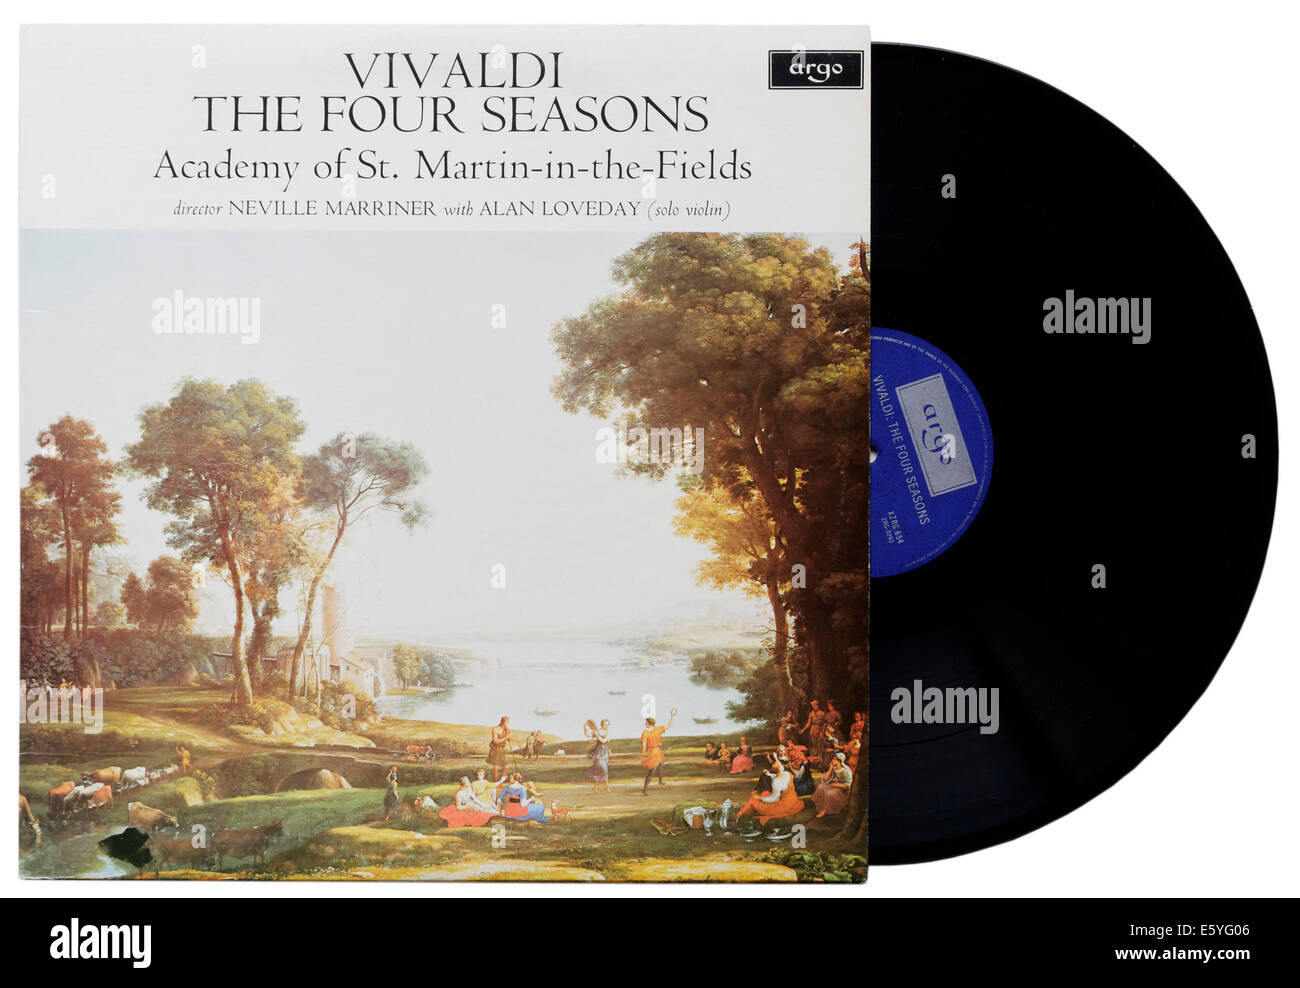 Les Quatre Saisons de Vivaldi sur vinyle, Sir Neville Marriner la conduite de l'Academy of St Martin in the Fields Banque D'Images